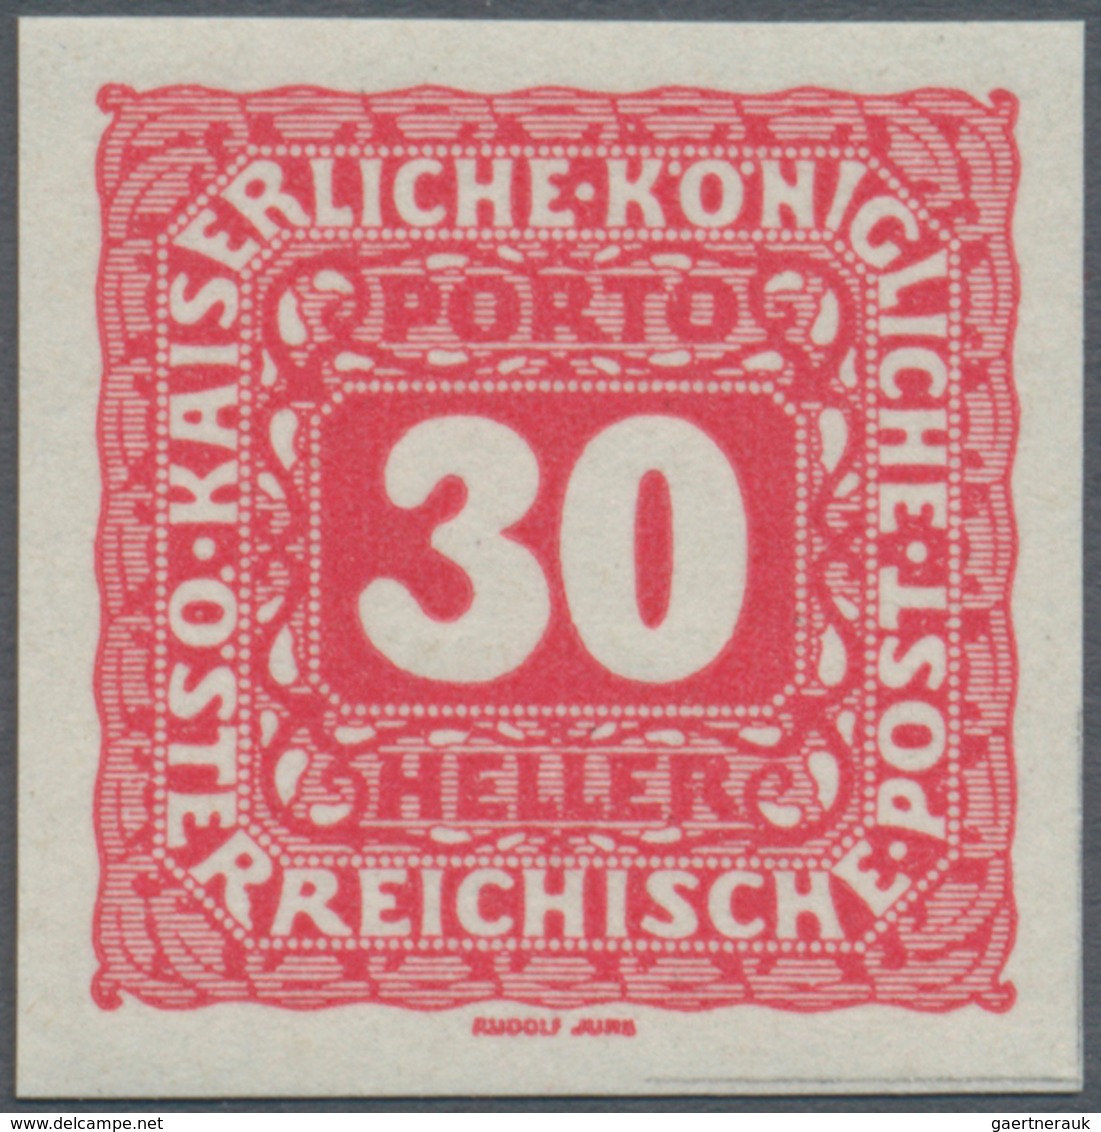 Österreich - Portomarken: 1916, 5 H. bis 10 Kr., komplette Serie von elf Werten UNGEZÄHNT, postfrisc